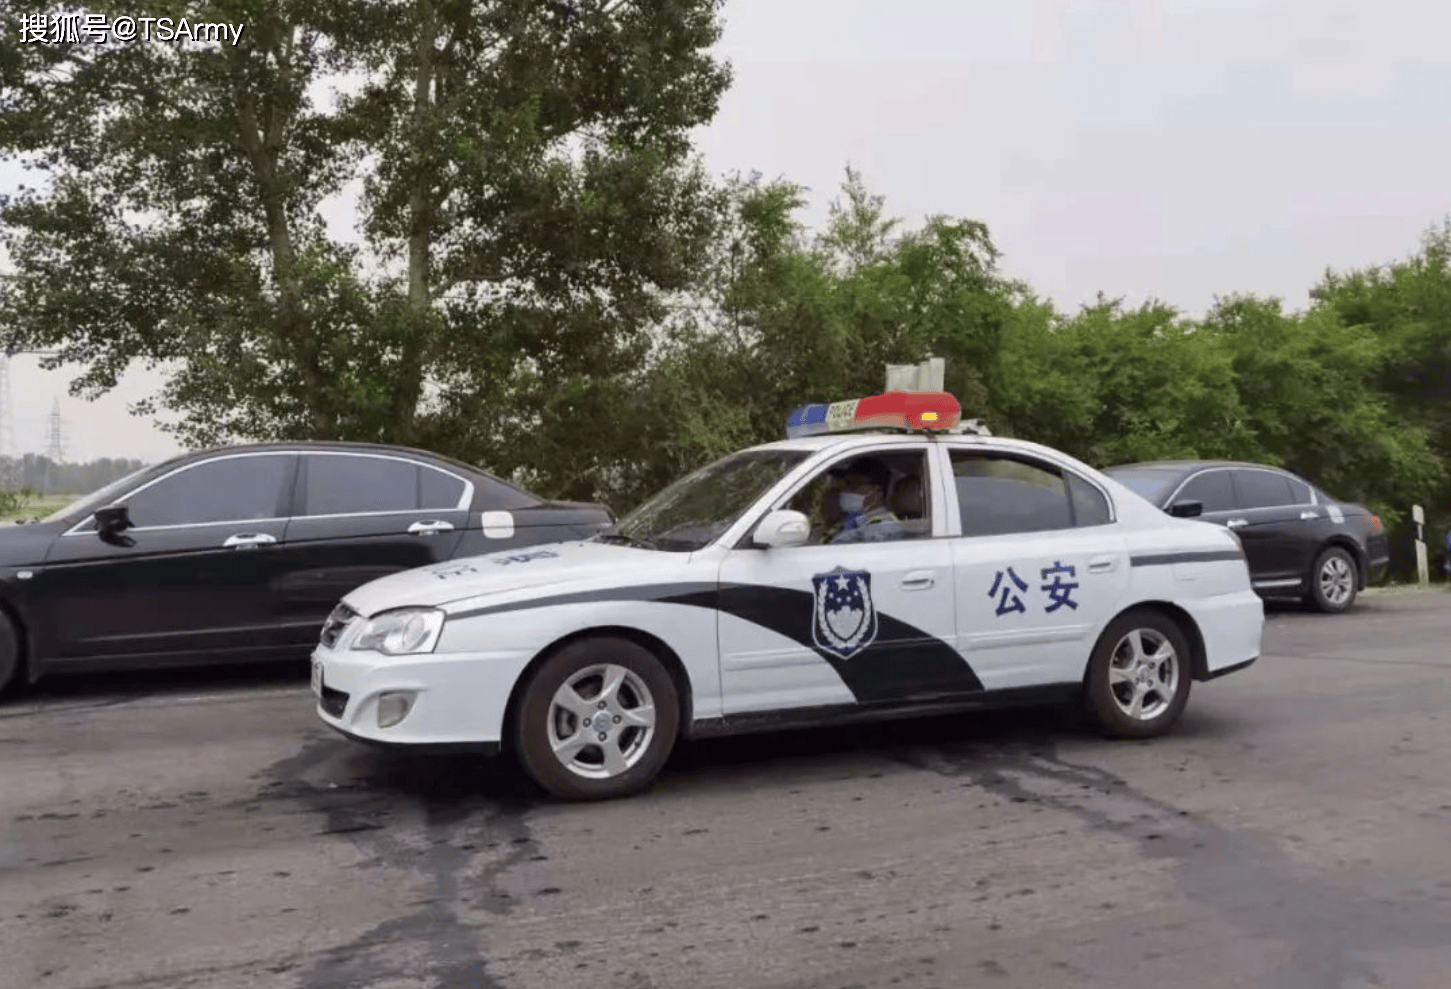 近半个世纪的中国警用车辆变迁史